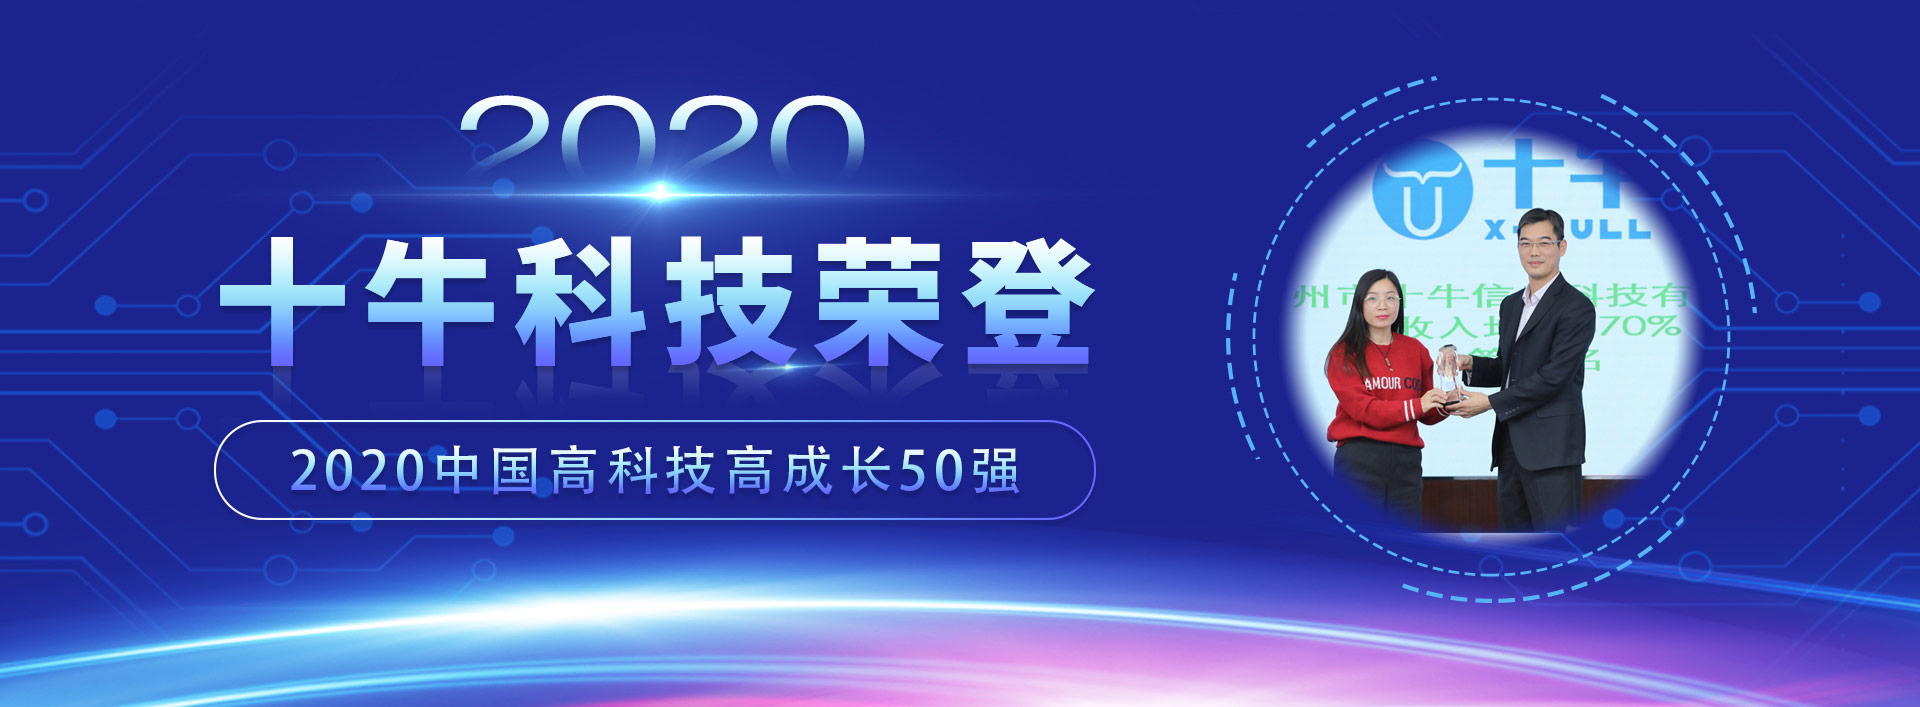 十牛科技獲評德勤“2020中國高科技高成長企業50強”之現場回顧